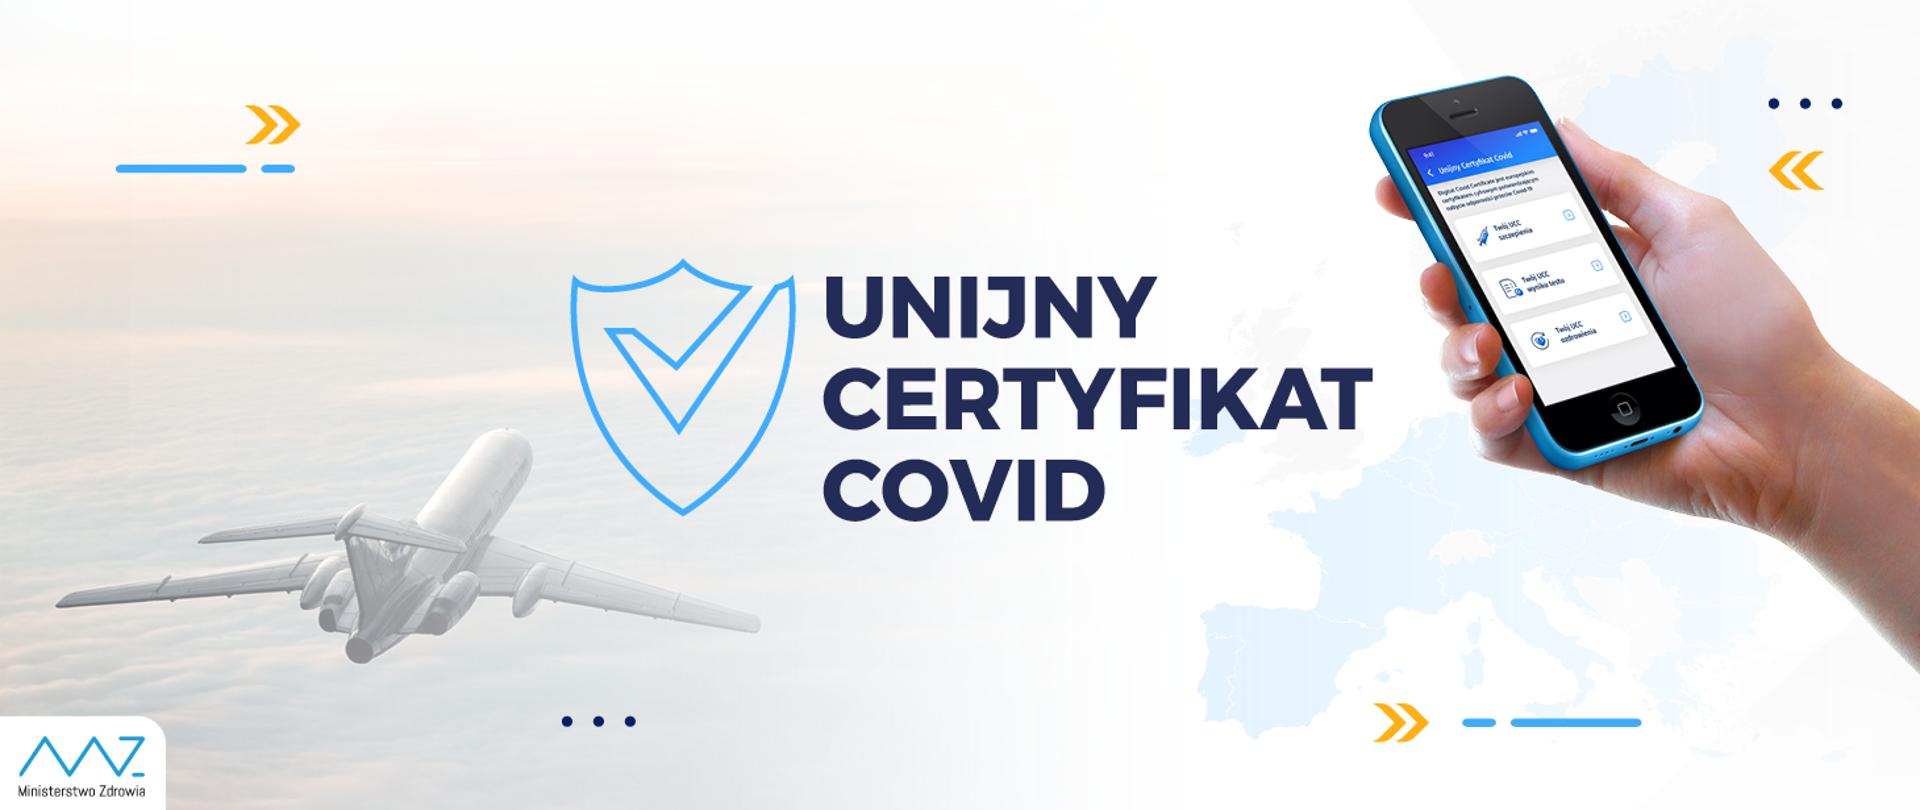 Unijny Certyfikat Covid